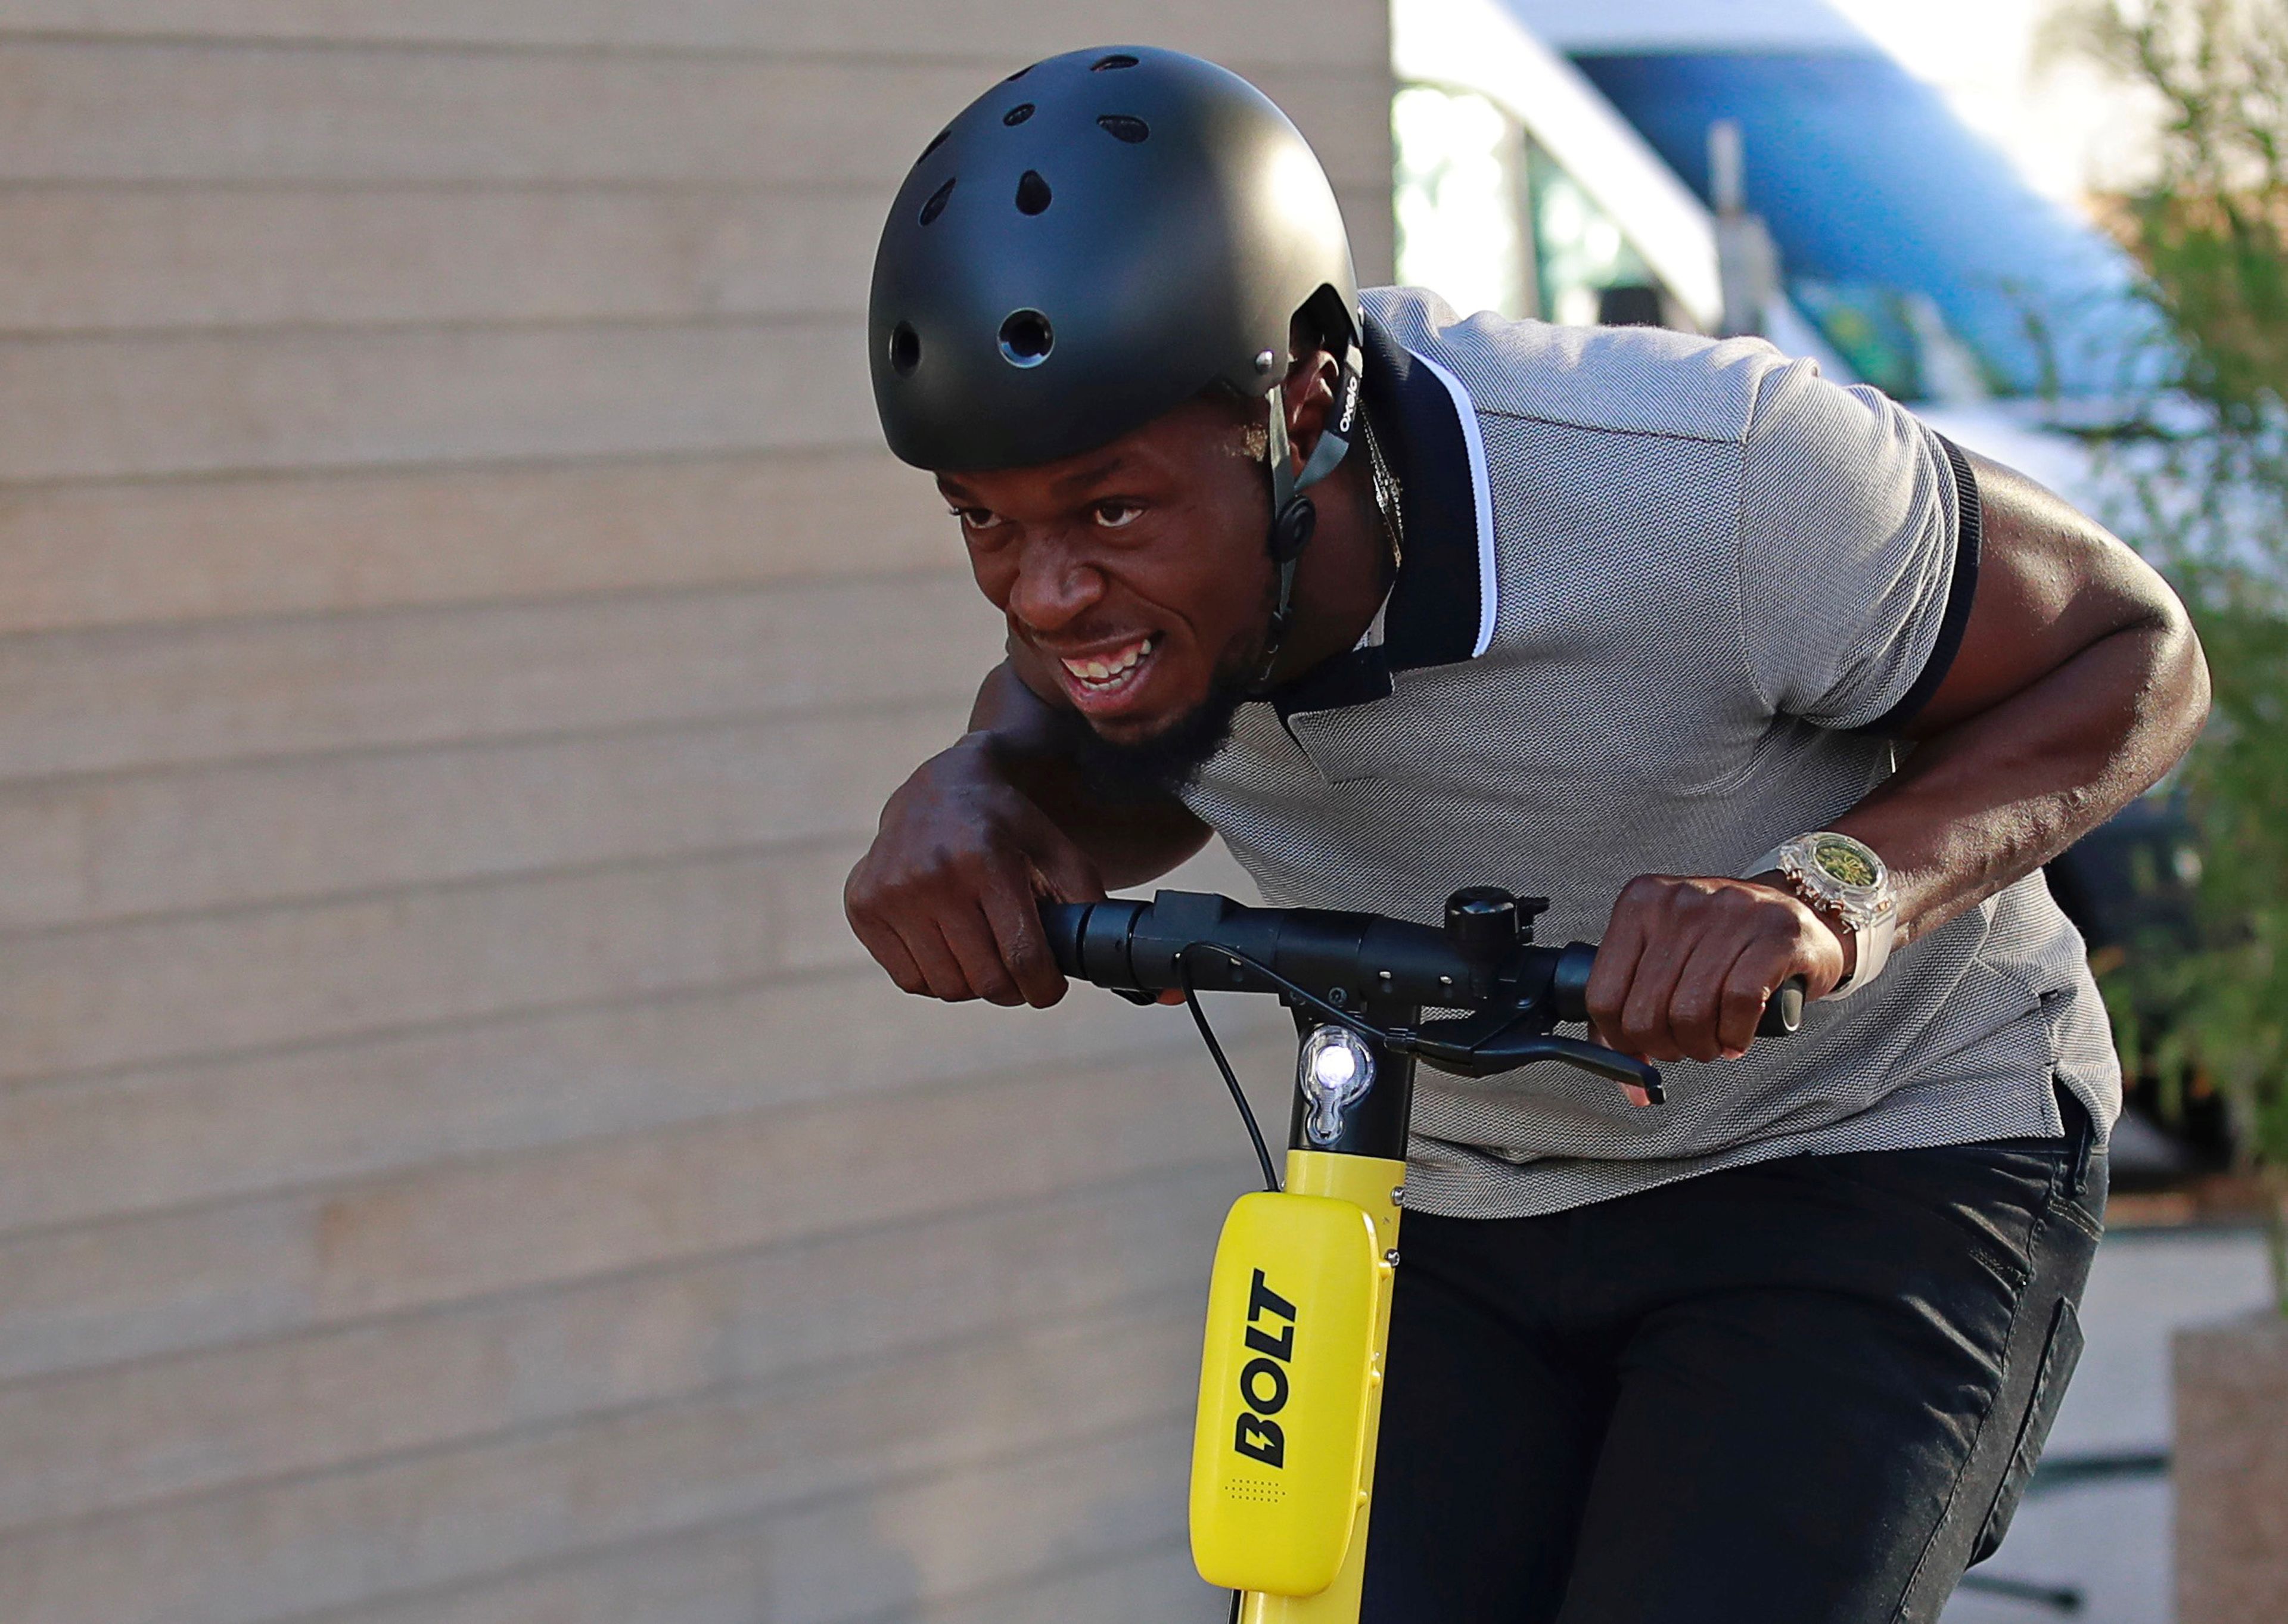 El exatleta Usain Bolt conduce un patinete eléctrico compartido de la marca Bolt en París.